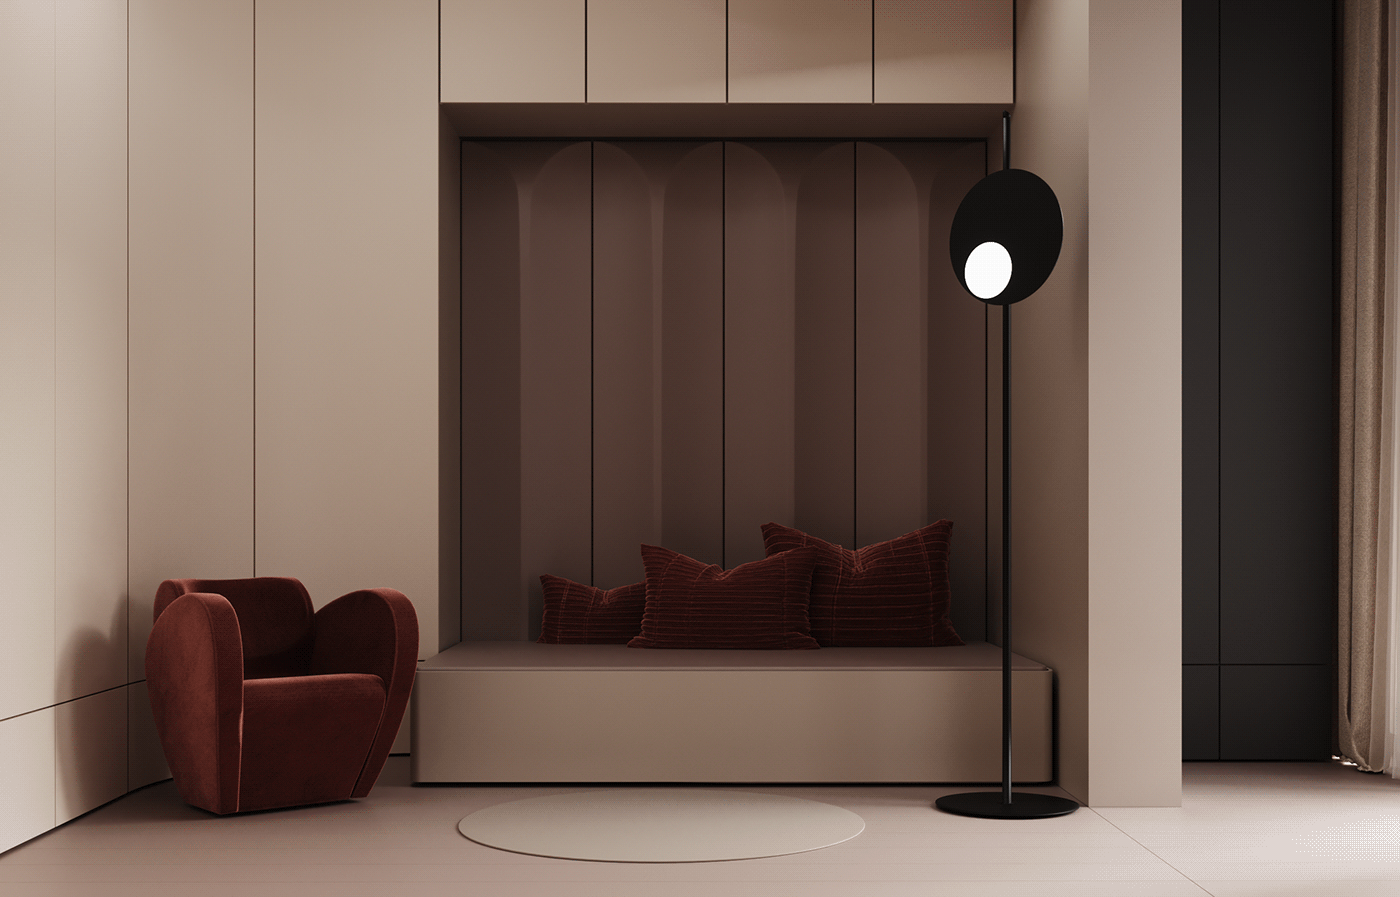 interior design  Luxury Apartment minimalistinterior minimalistapartment monochrome beigeapartment